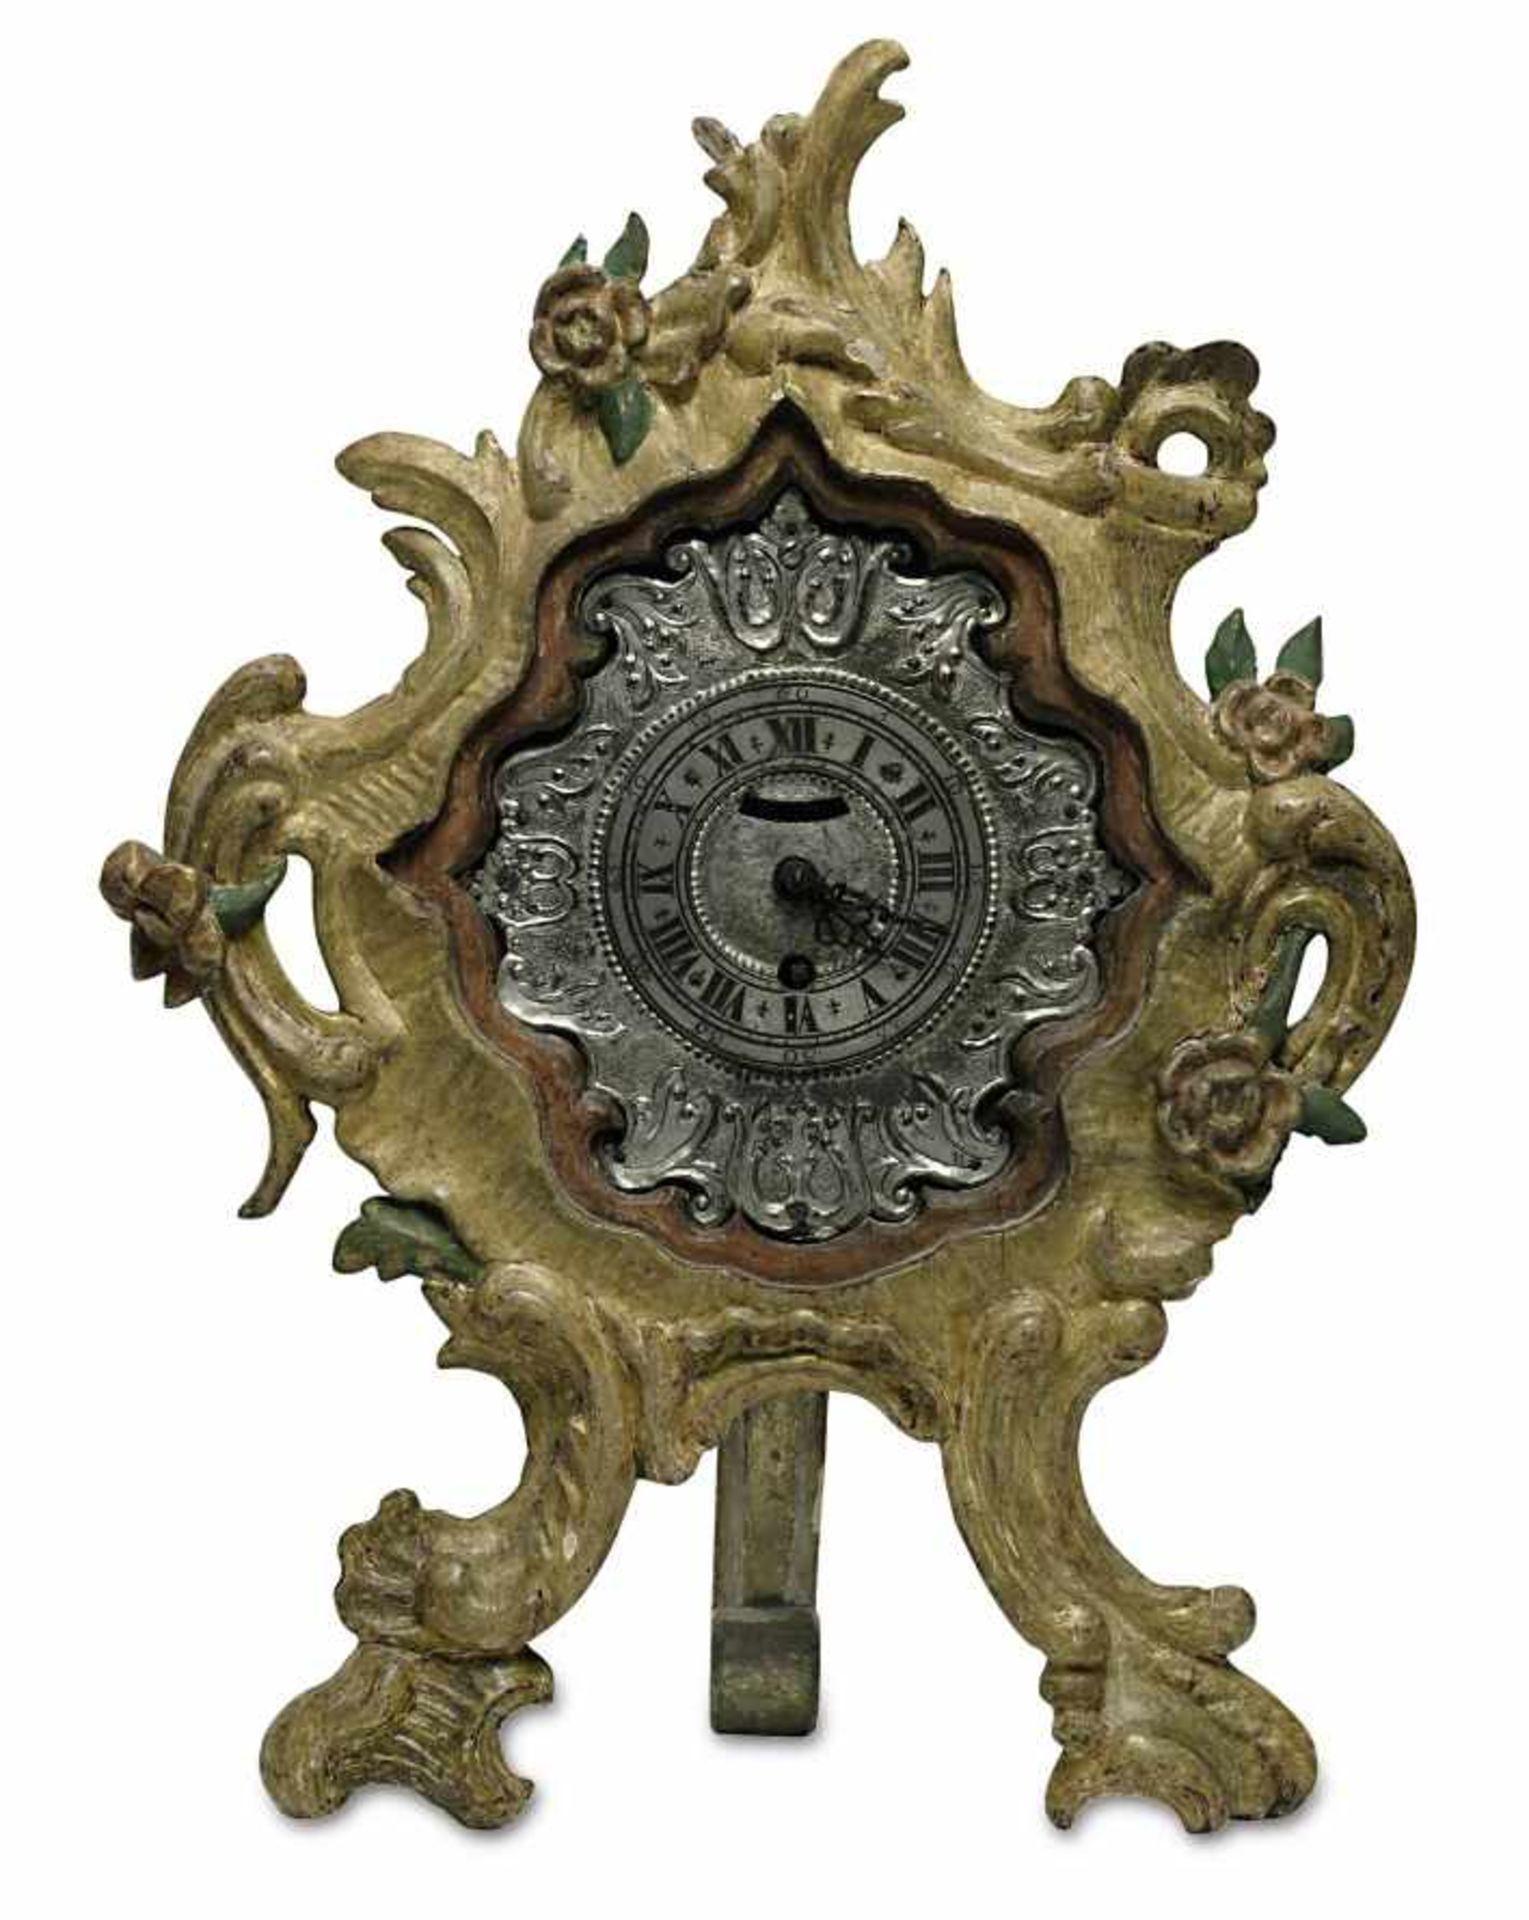 TischuhrWohl süddeutsch, 19. Jh. Dreibeiniges, aus Rocaillen und C-Spangen geschnitztes Uhrgestell